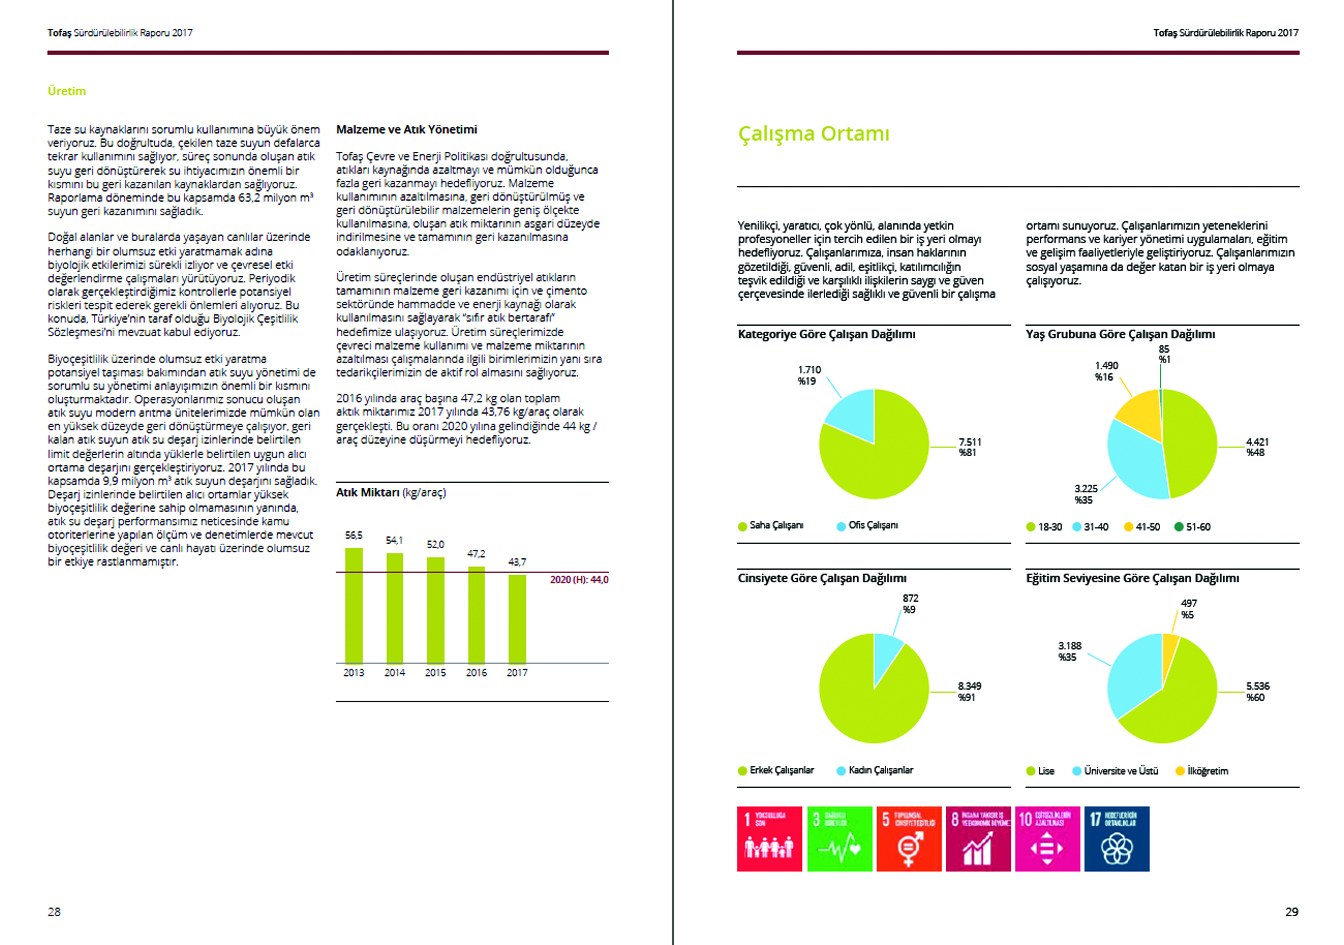 TOFAŞ / 2017 Sürdürülebilirlik Raporu / 2017 Sustainability Report